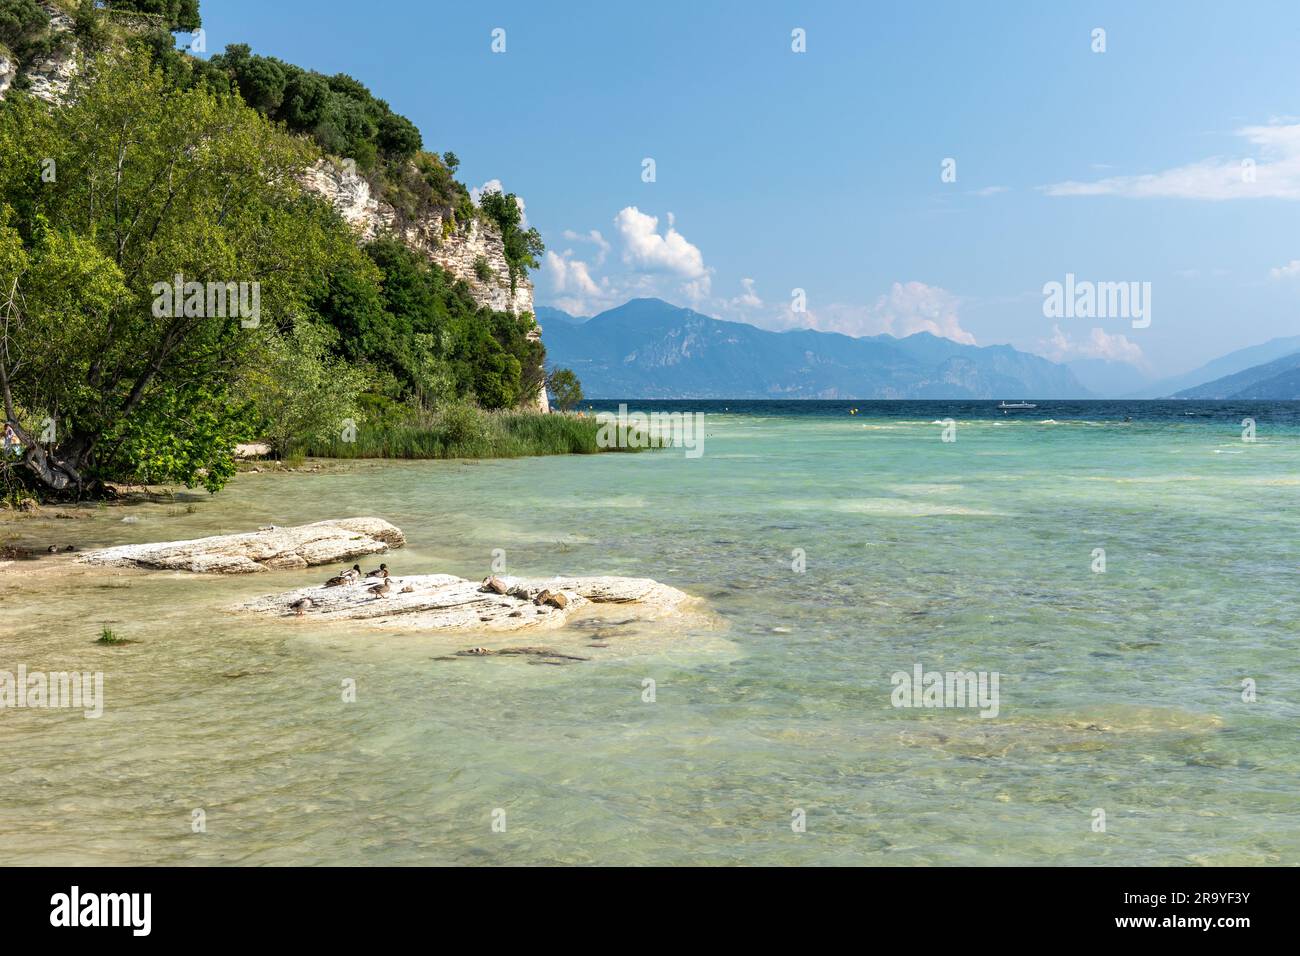 Il bellissimo e pittoresco litorale della penisola di Sirmione. Una spiaggia rocciosa a Sirmione, Lago di Garda, Italia, Europa Foto Stock